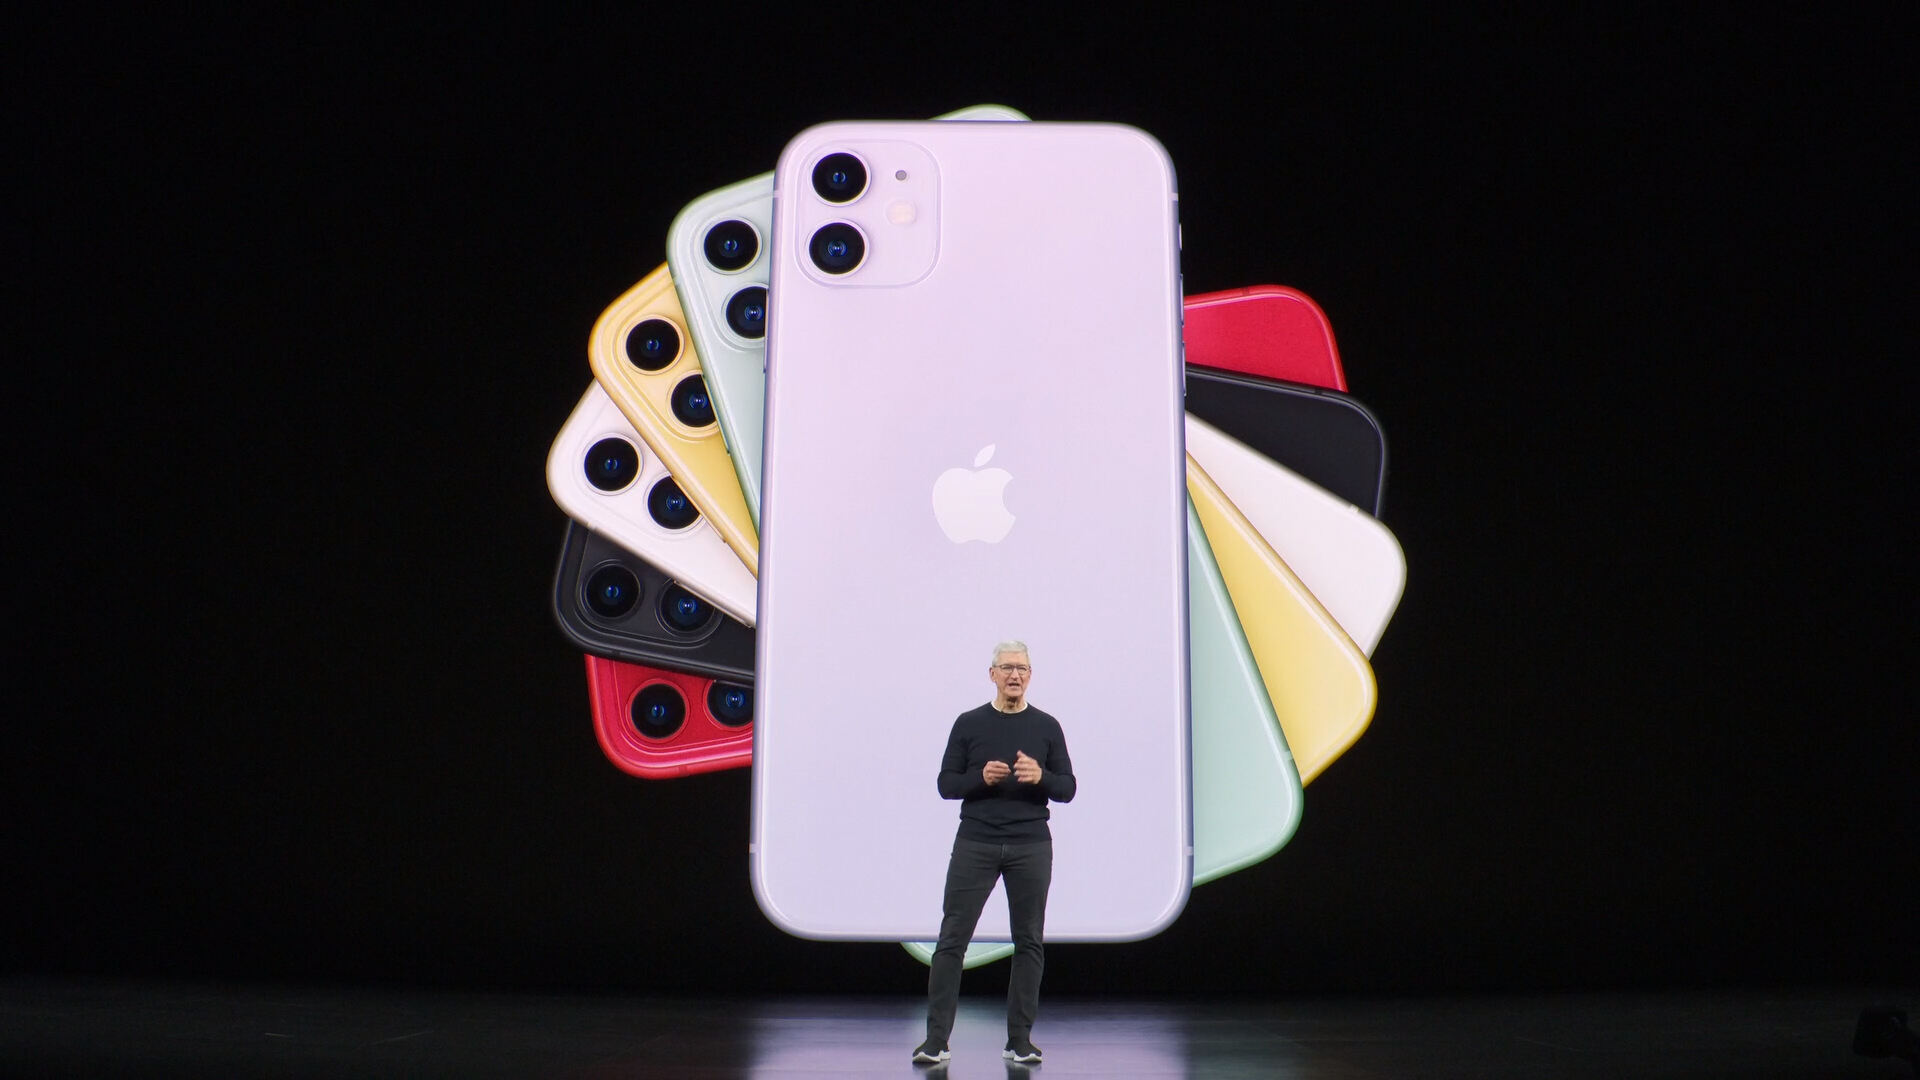 5499元起售 苹果正式推出iPhone 11